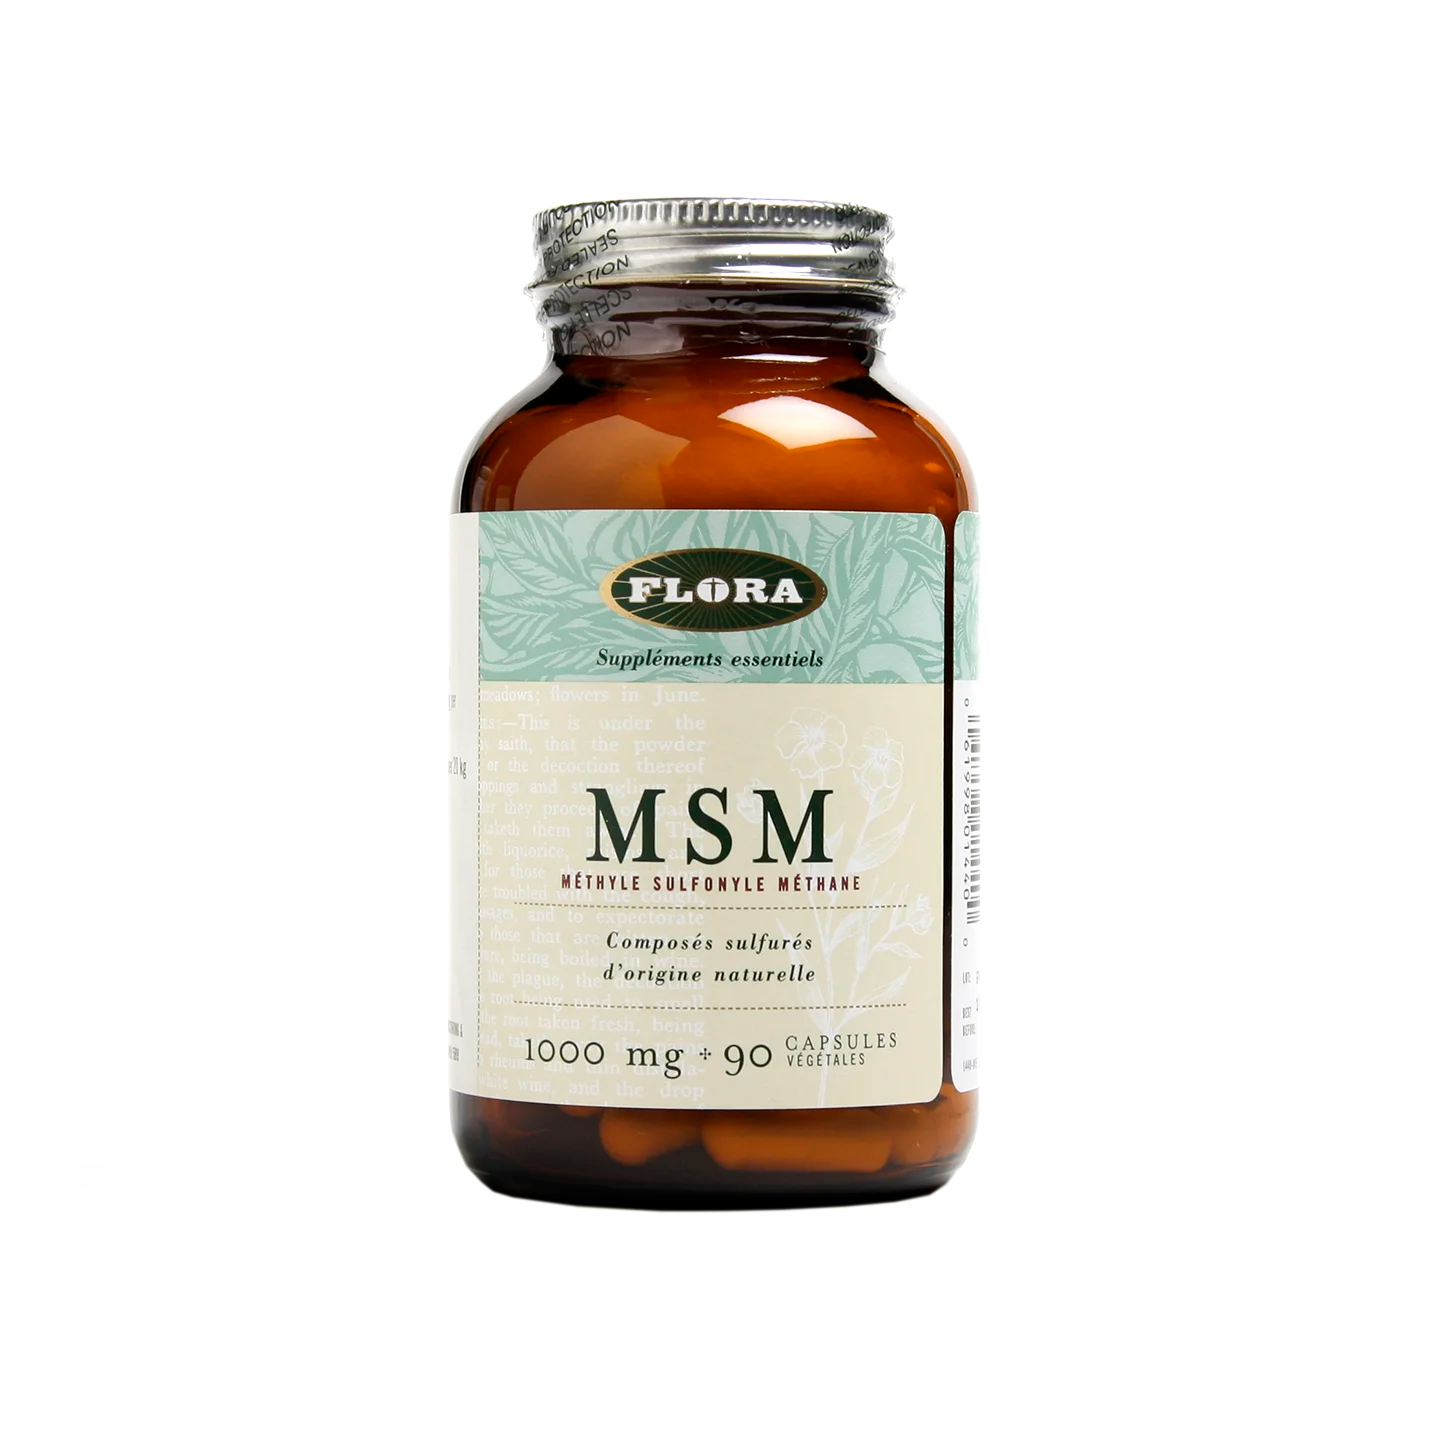 MSM lignisul 1000 mg